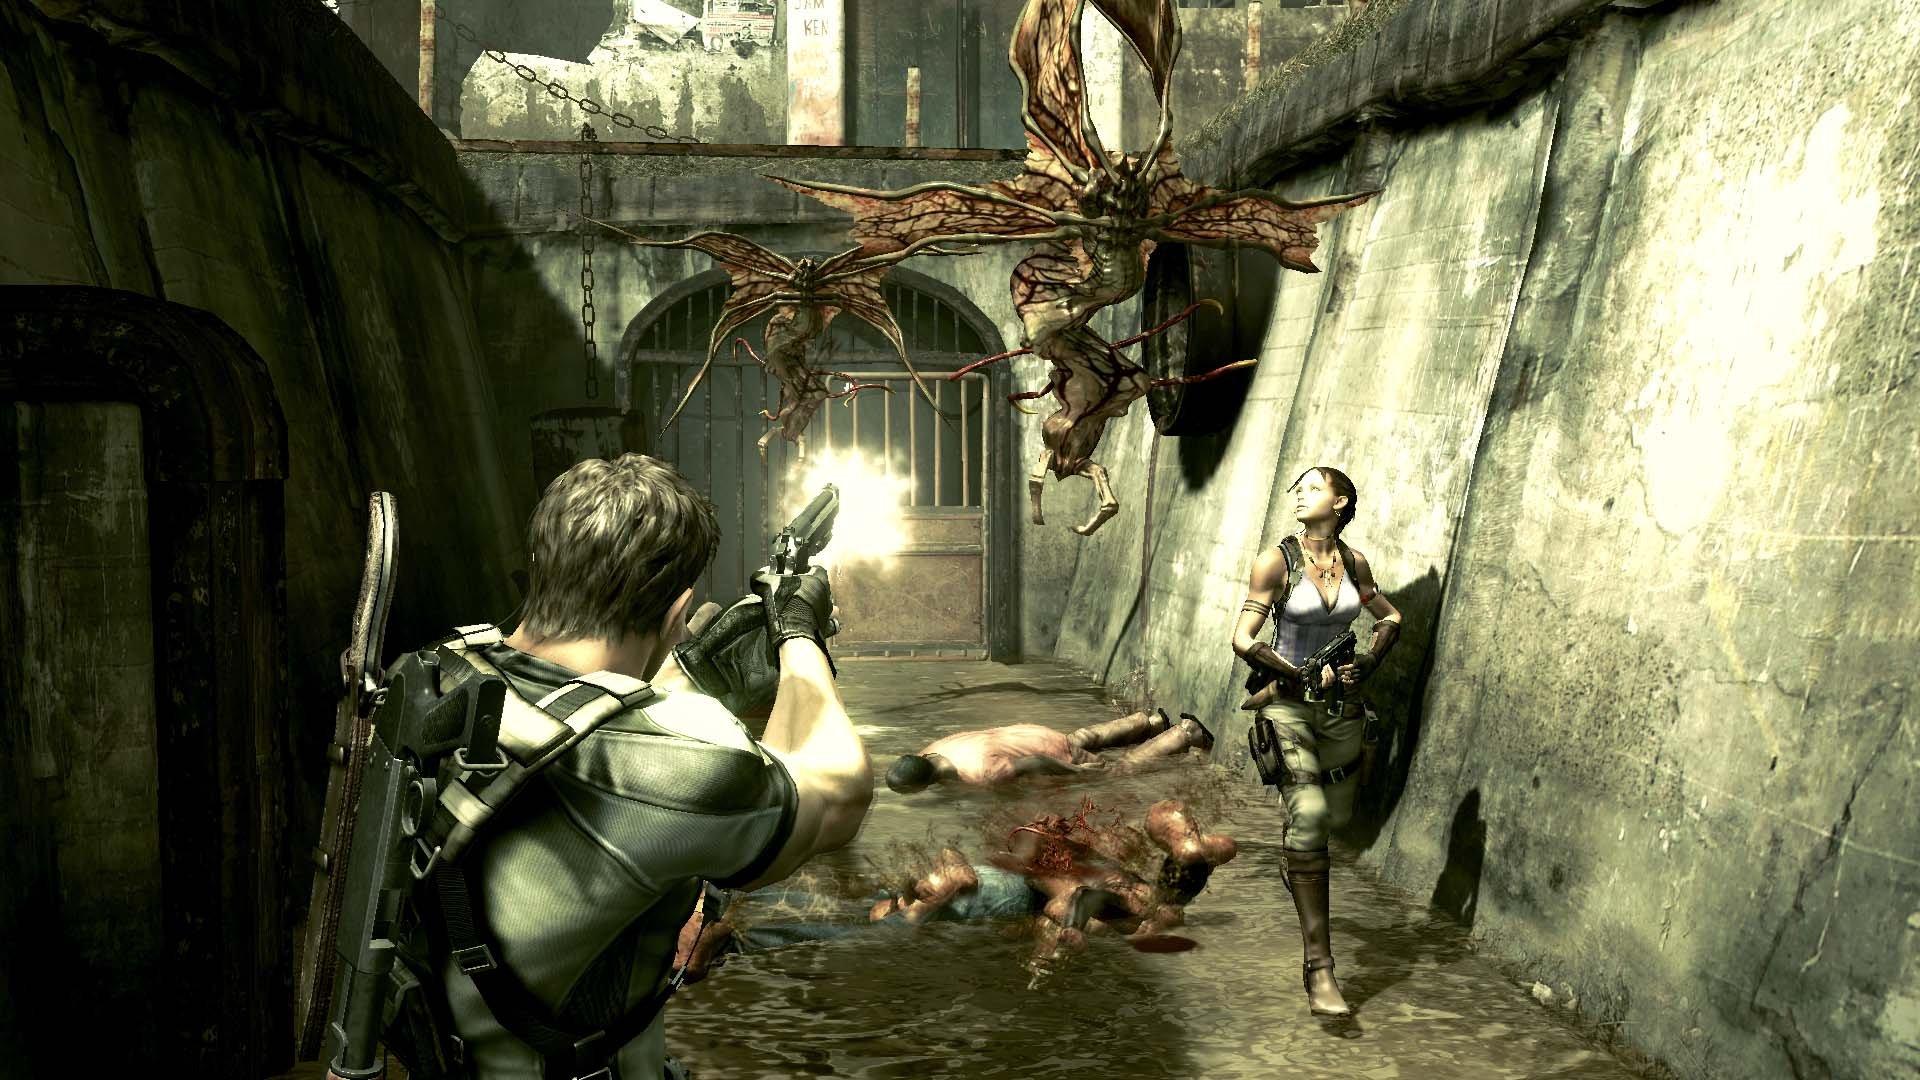 Resident Evil 4 - PlayStation 5 | PlayStation 5 | GameStop